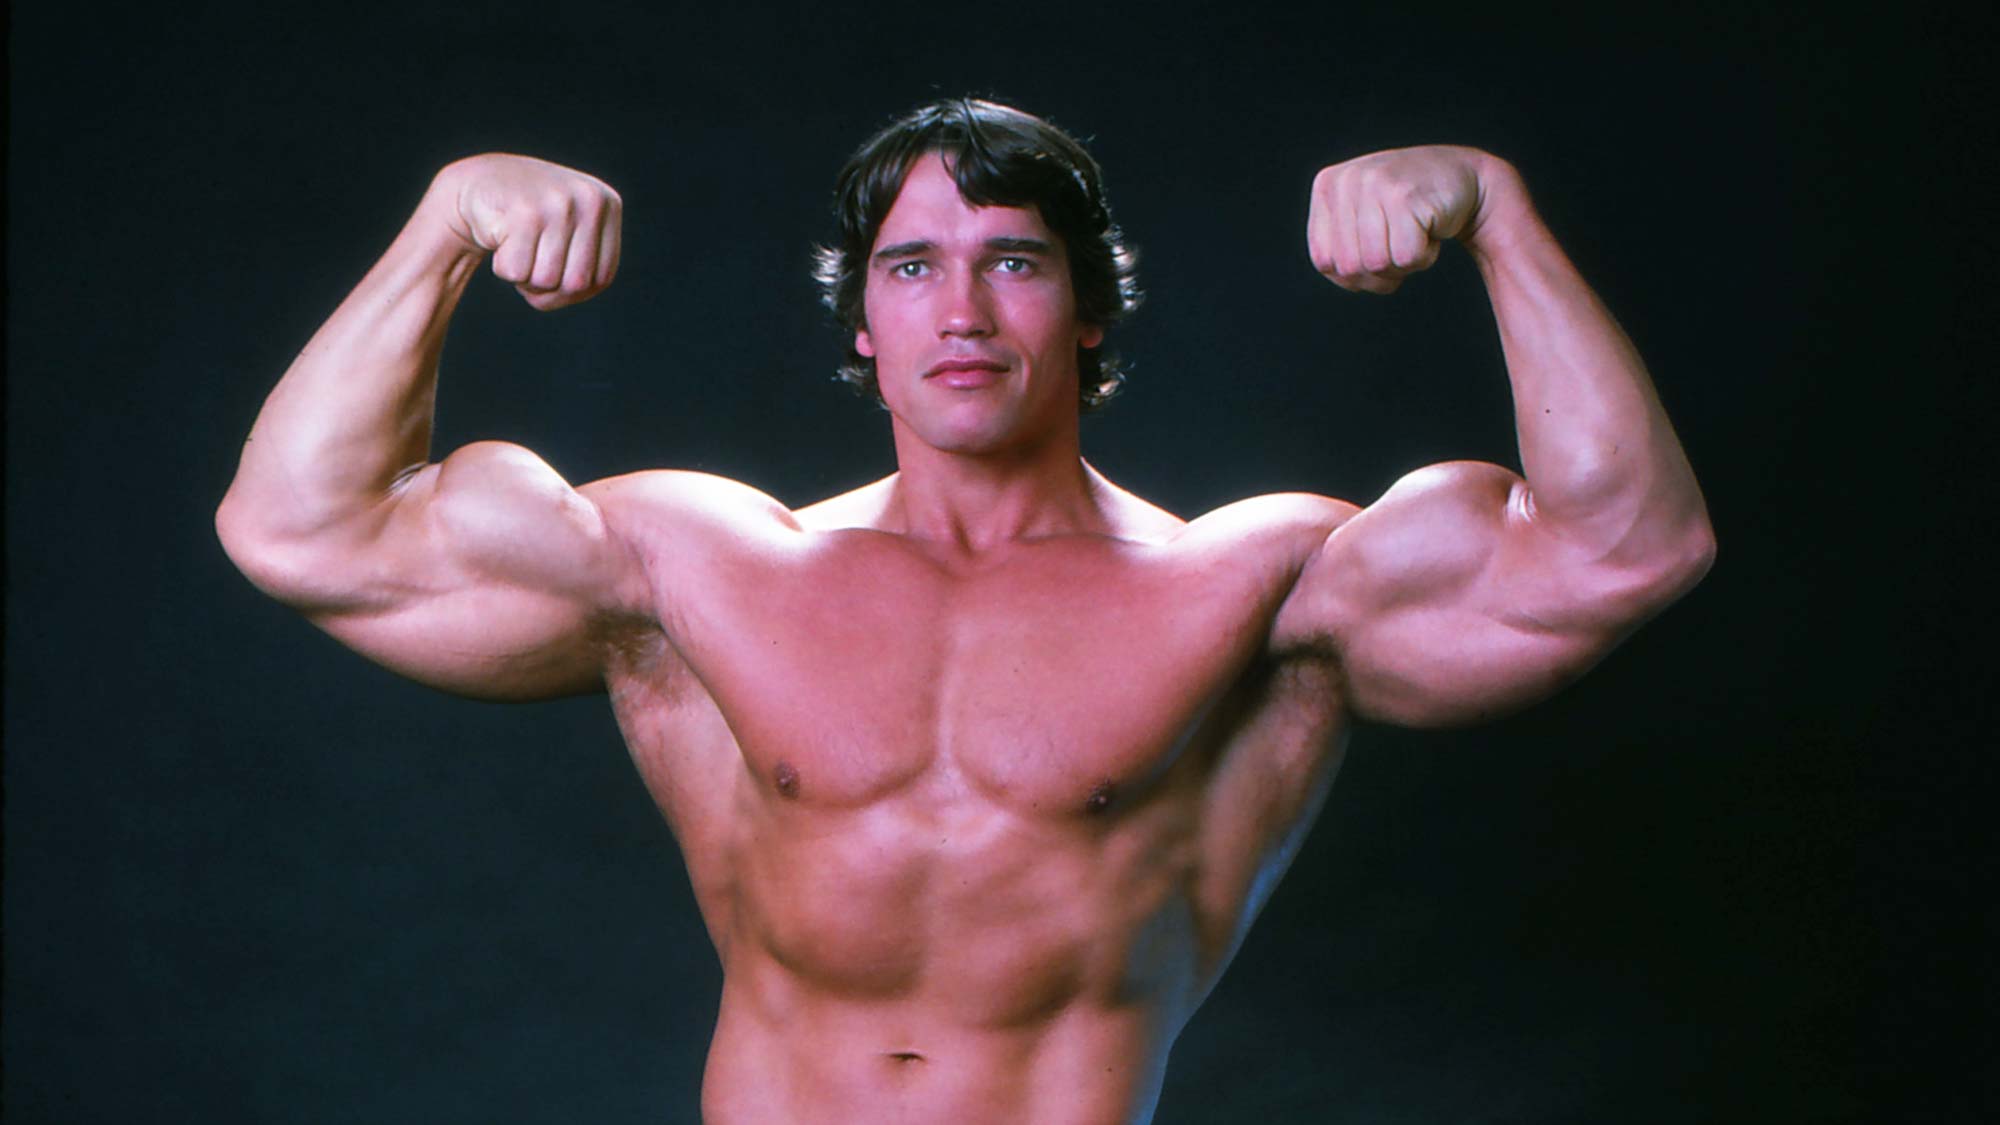 Der professionelle Bodybuilder Arnold Schwarzenegger posiert im Oktober 1976 in Höchstform